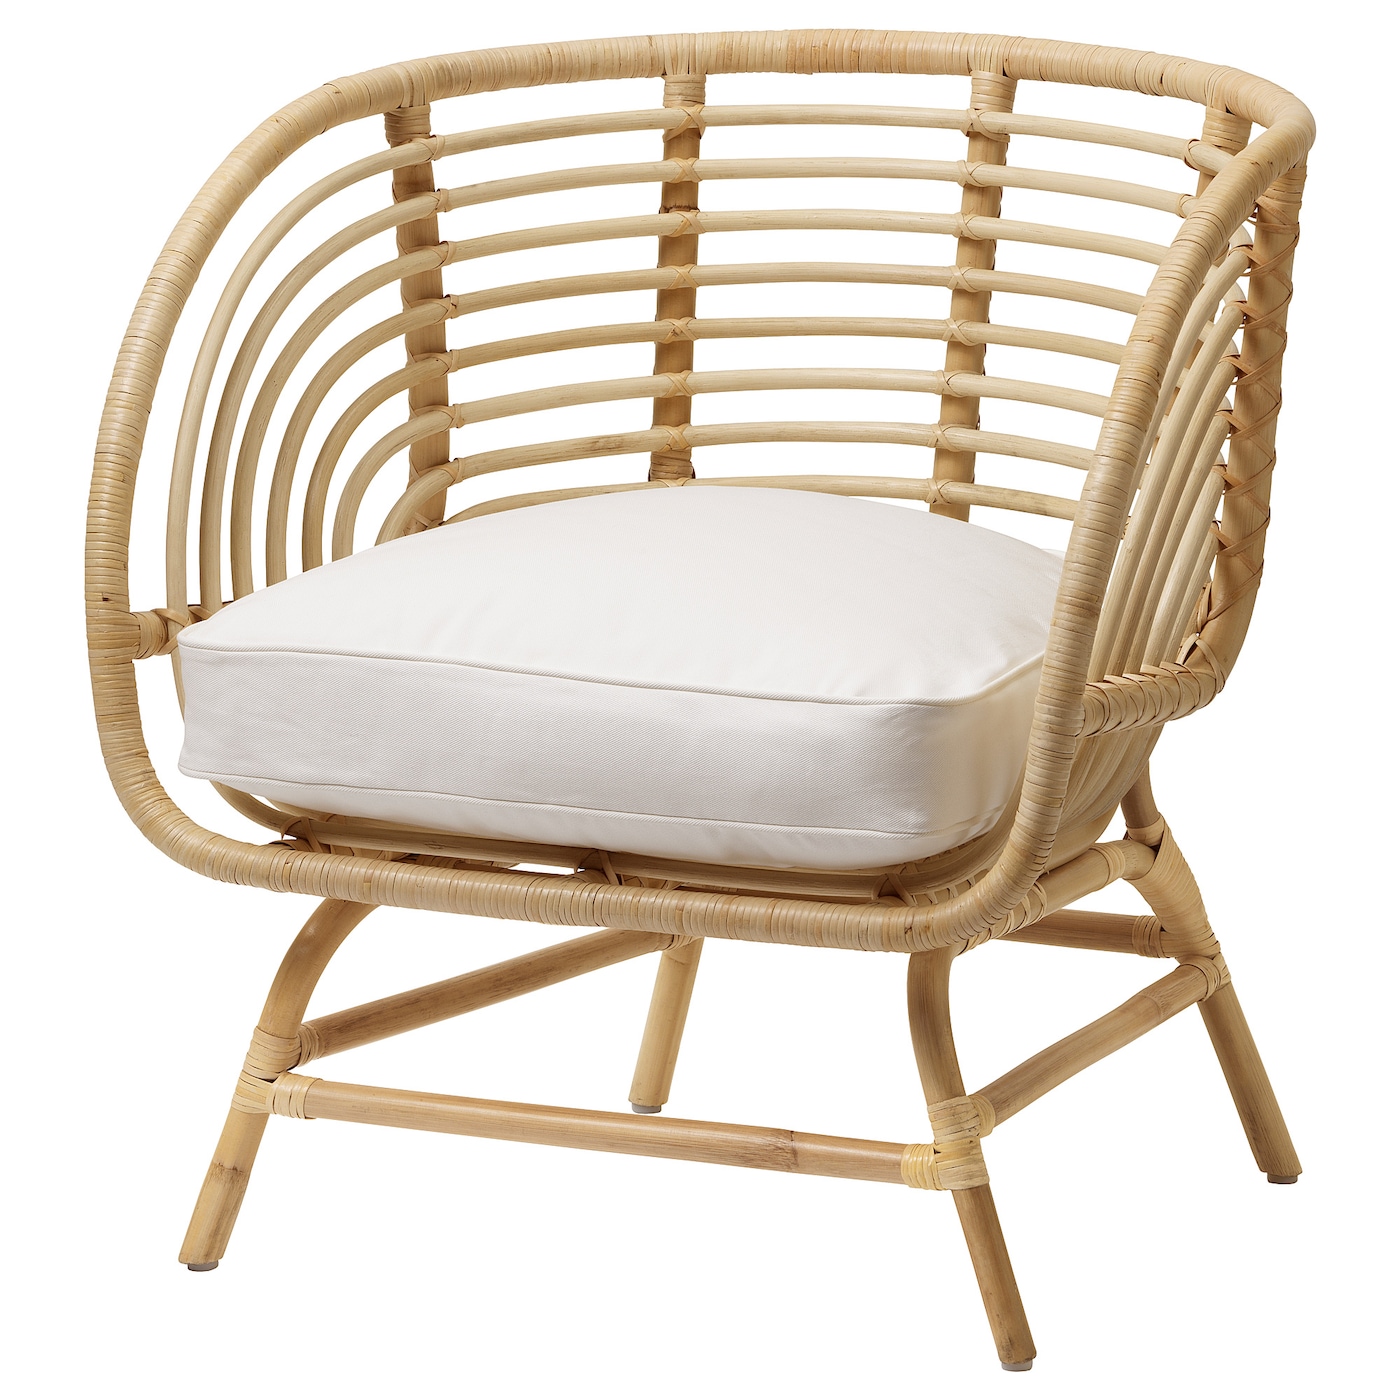 Кресло садовое - IKEA BUSKBO, 75х52 см, коричневый/светло-коричневый, БУСКБУ ИКЕА